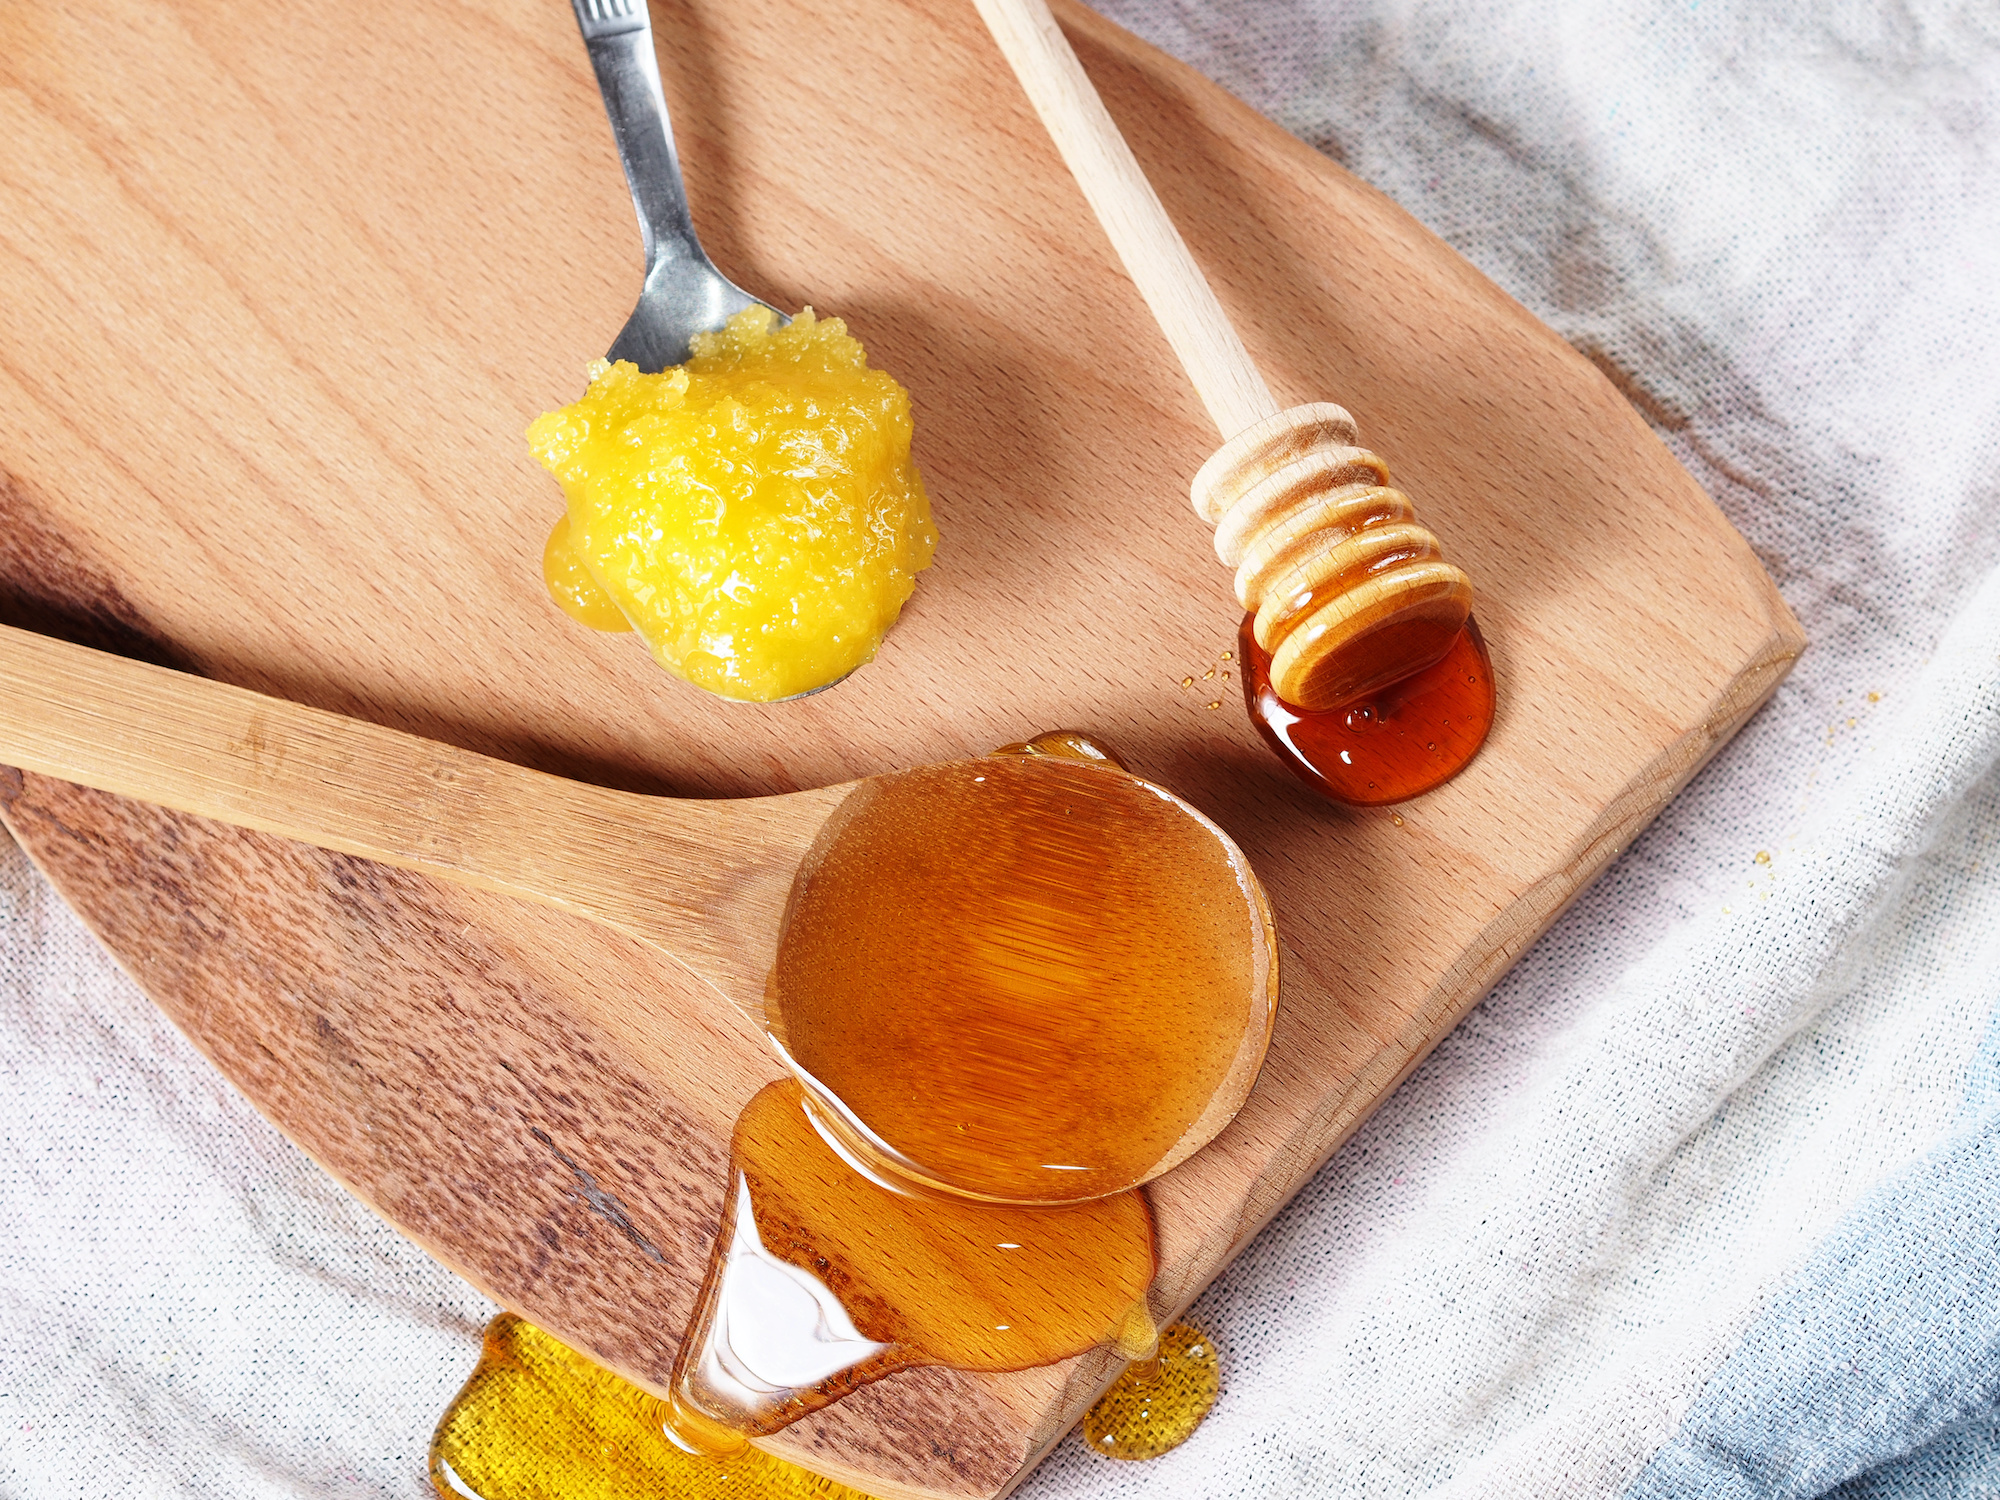 Le miel se cristallise naturellement au cours du temps, selon sa composition et la température. © tenkende, Adobe Stock